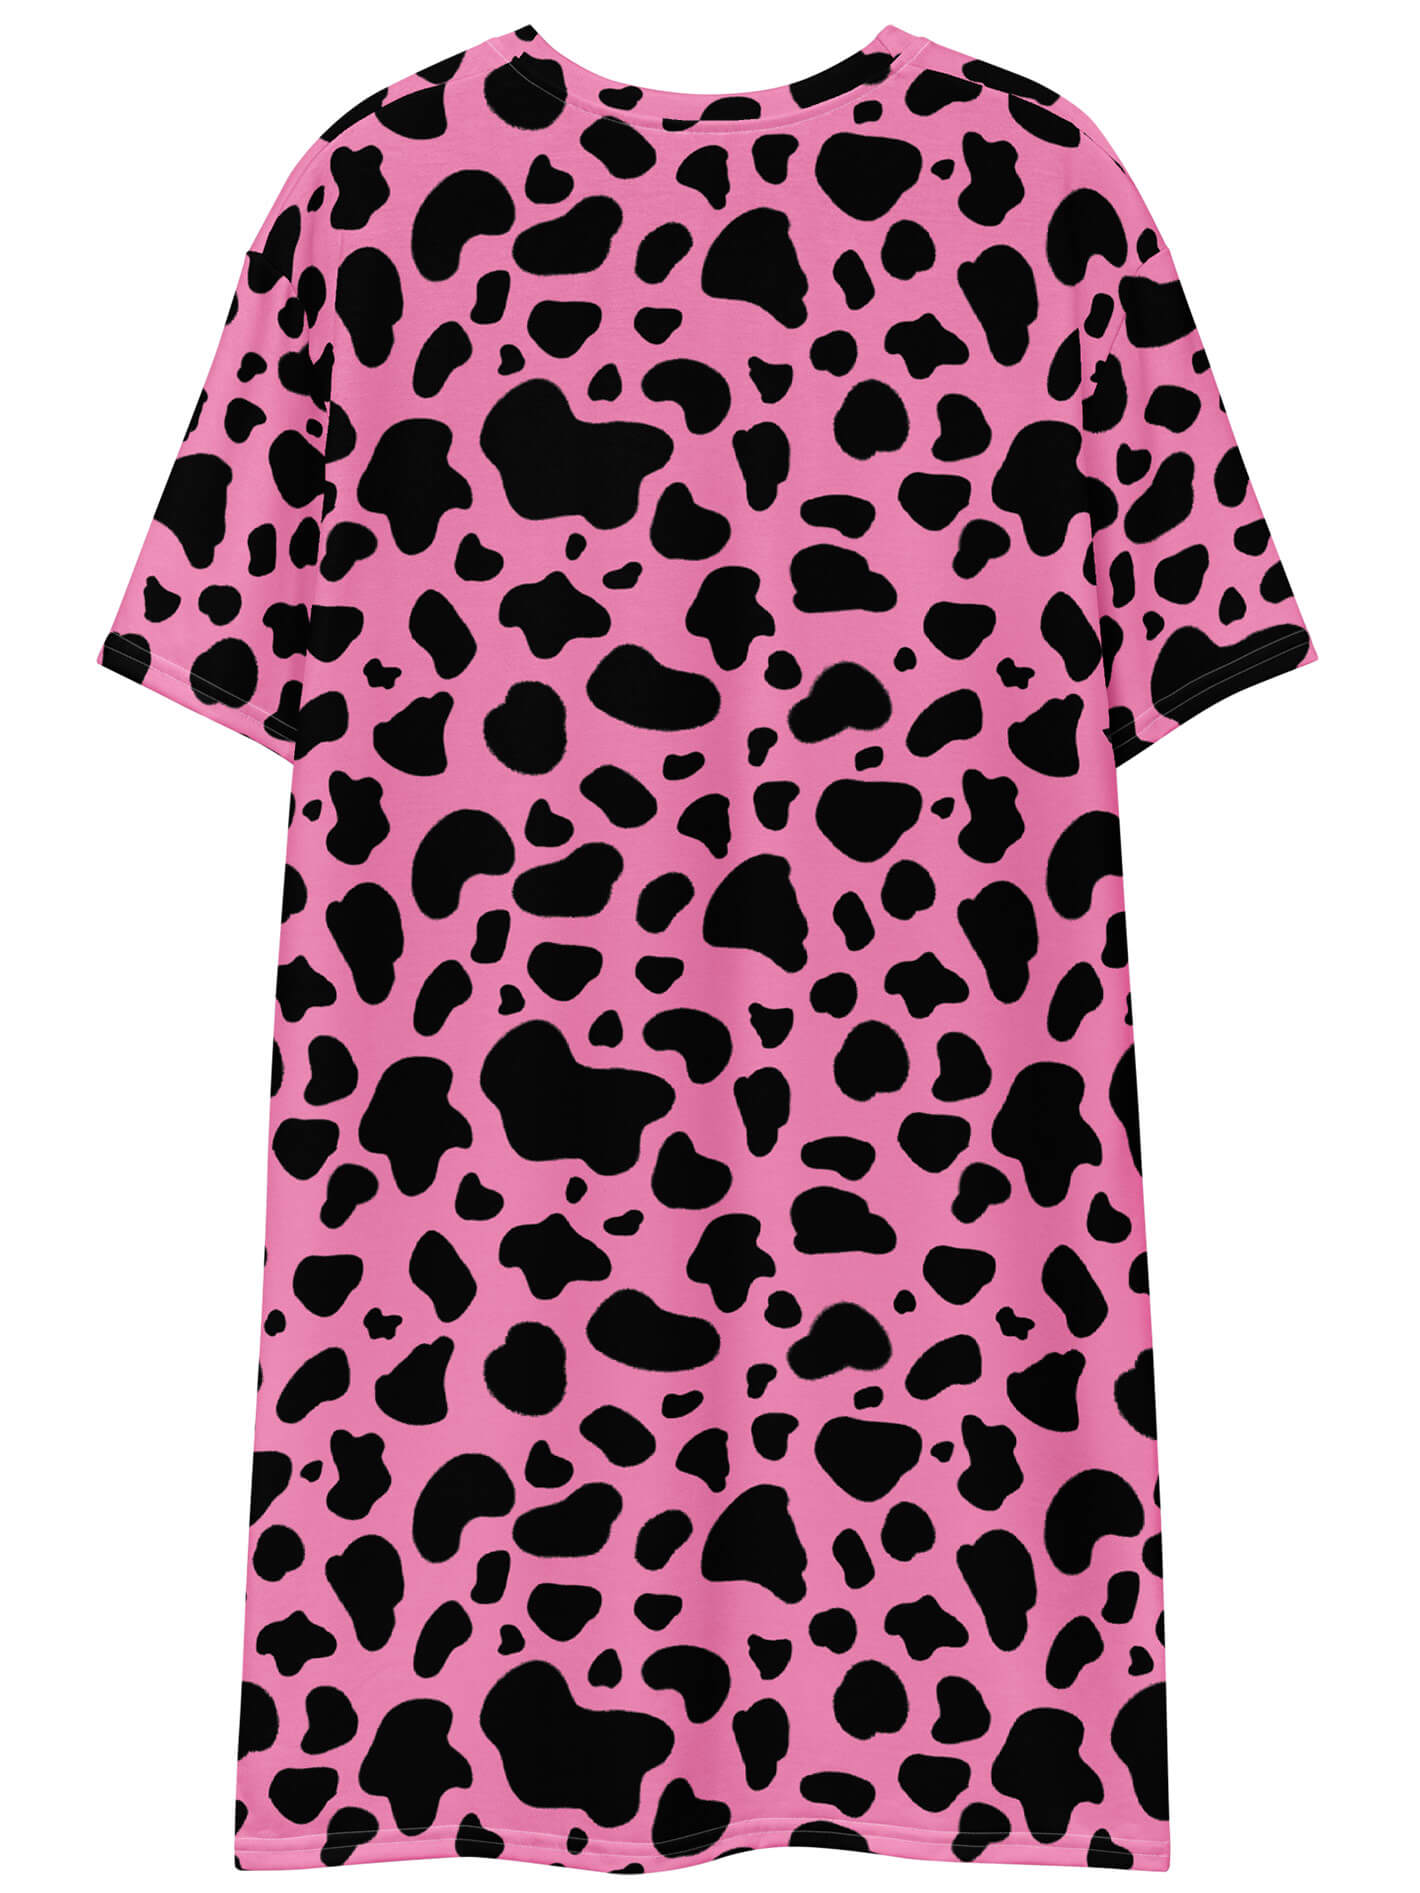 Plus size pink cow print dress.